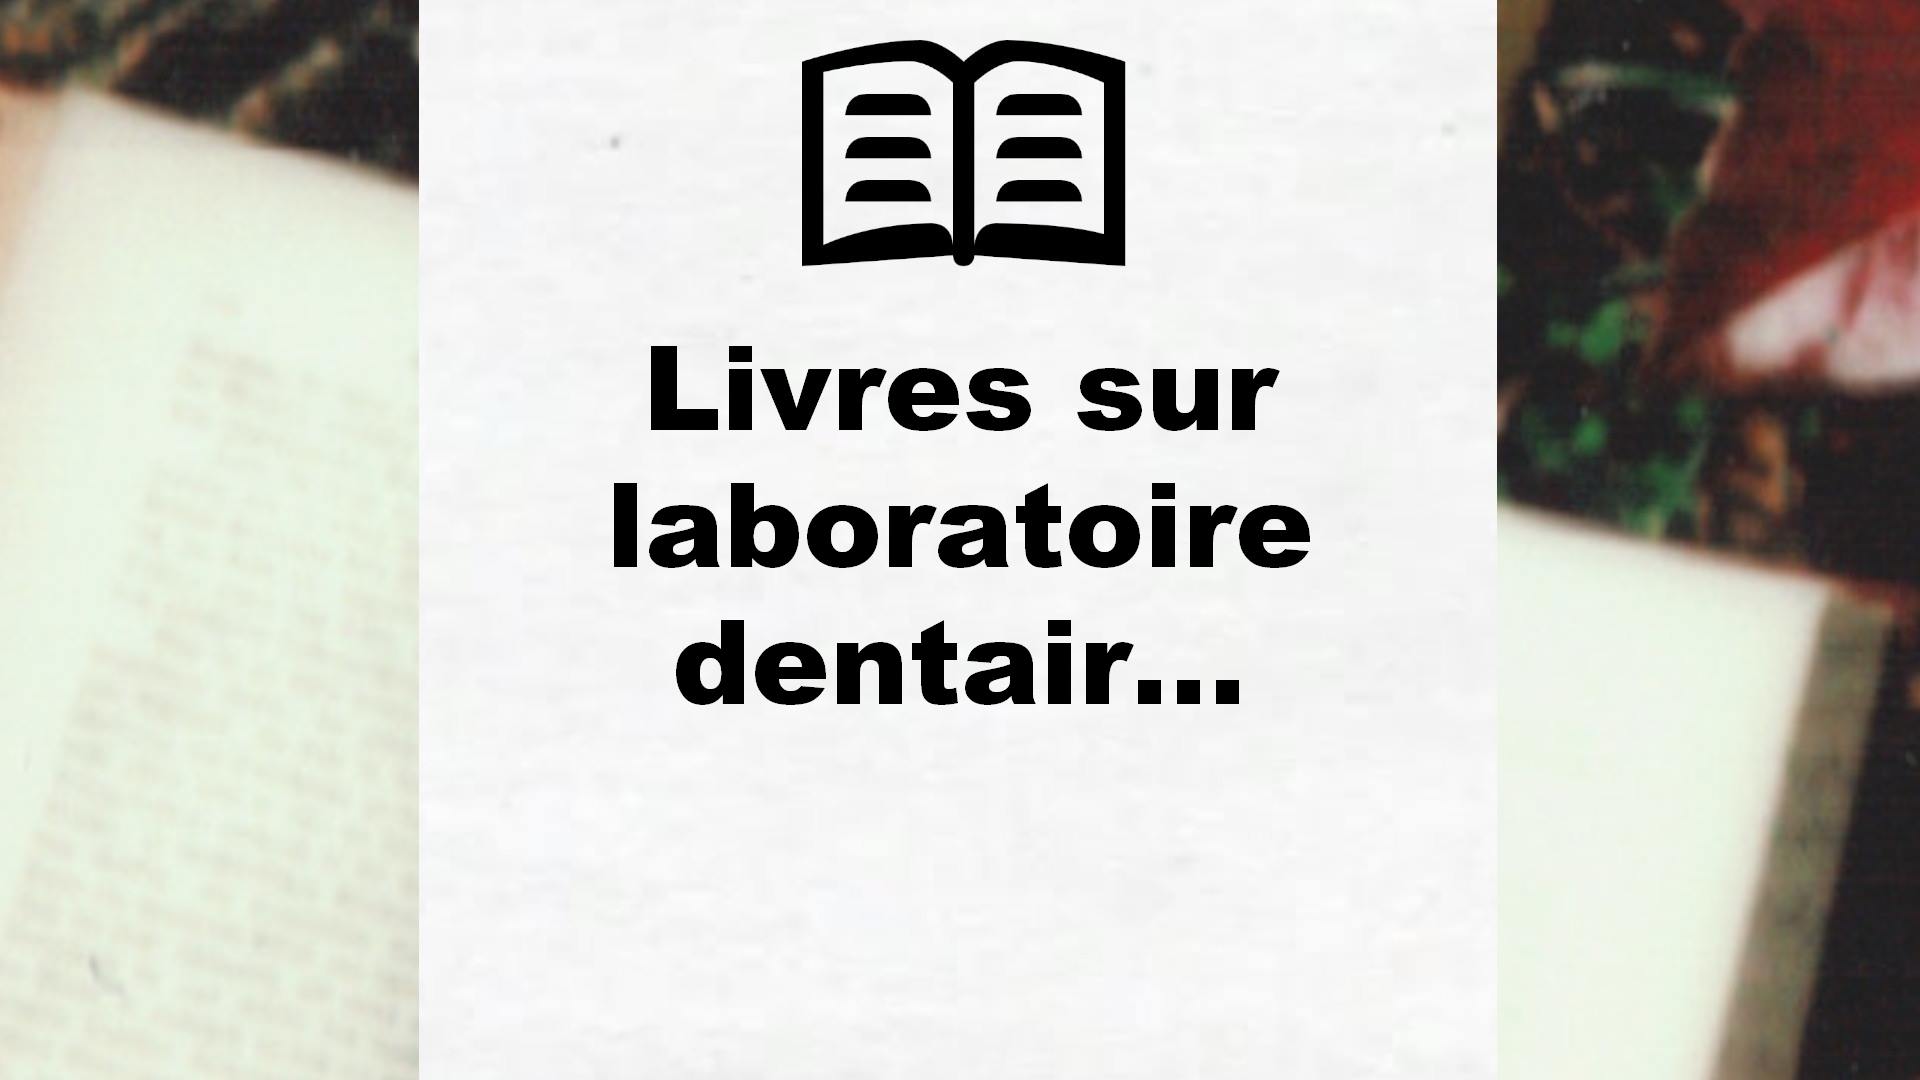 Livres sur laboratoire dentaire